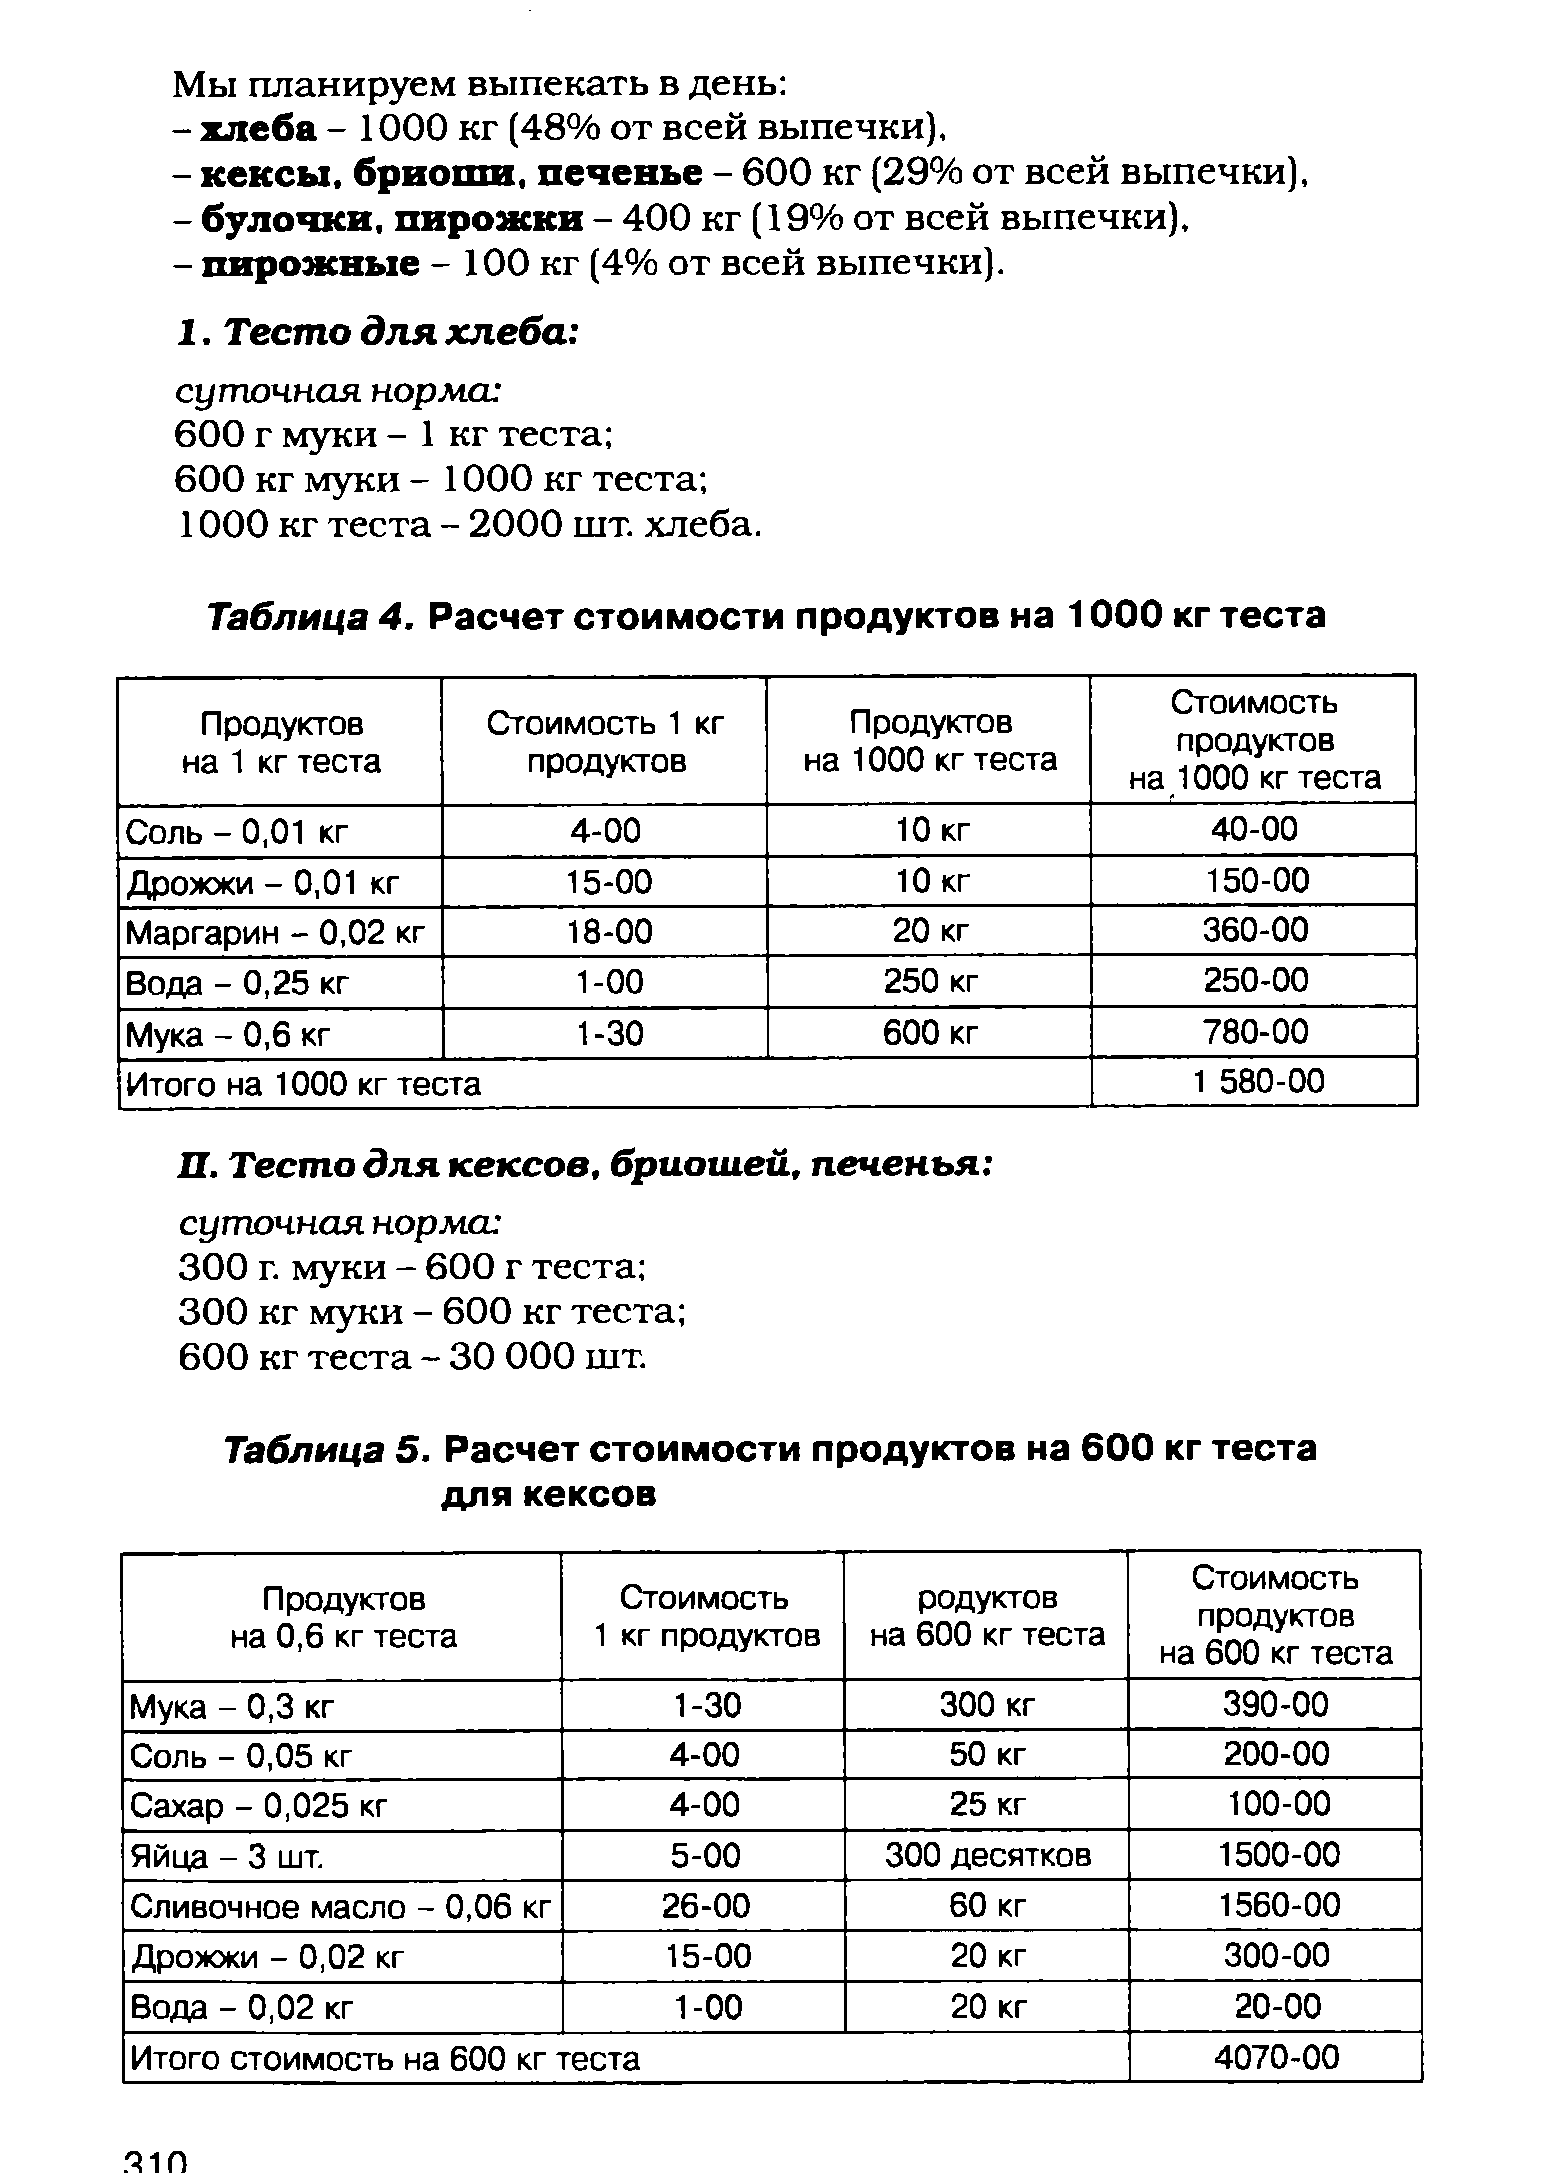 Таблица 4. Расчет стоимости продуктов на 1000 кг теста
